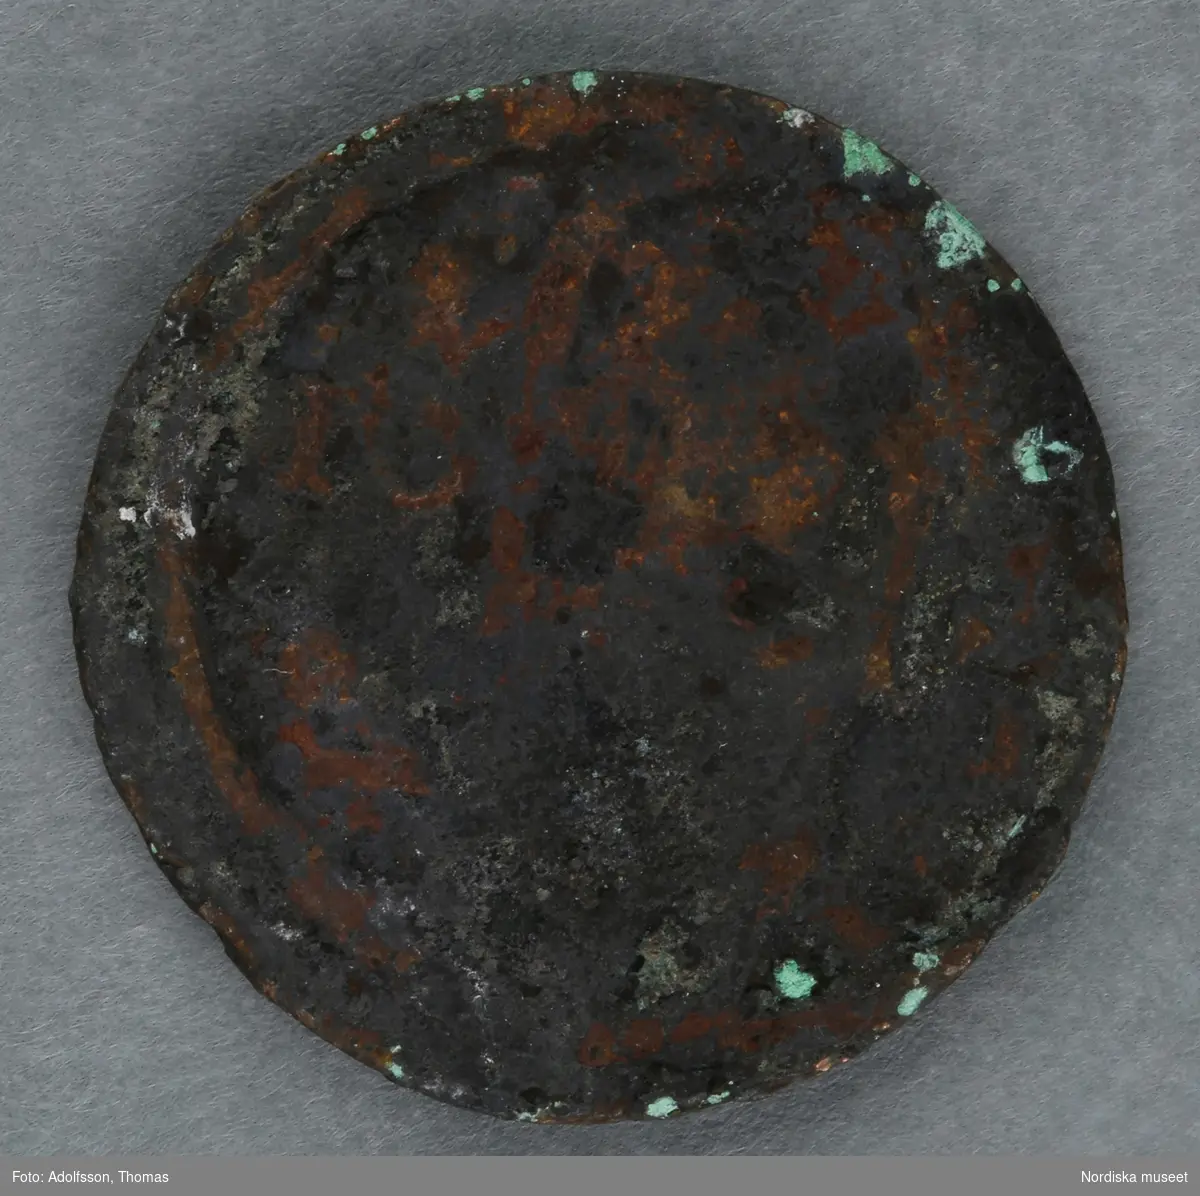 Huvudliggaren:
"a-c.
3 st. mynt av koppar; jordfynd från Sveavägen 52, Stockholm. Ink. 16/5 1919 av arbetare på platsen gm amanuens S. Wallin, Stockholm."